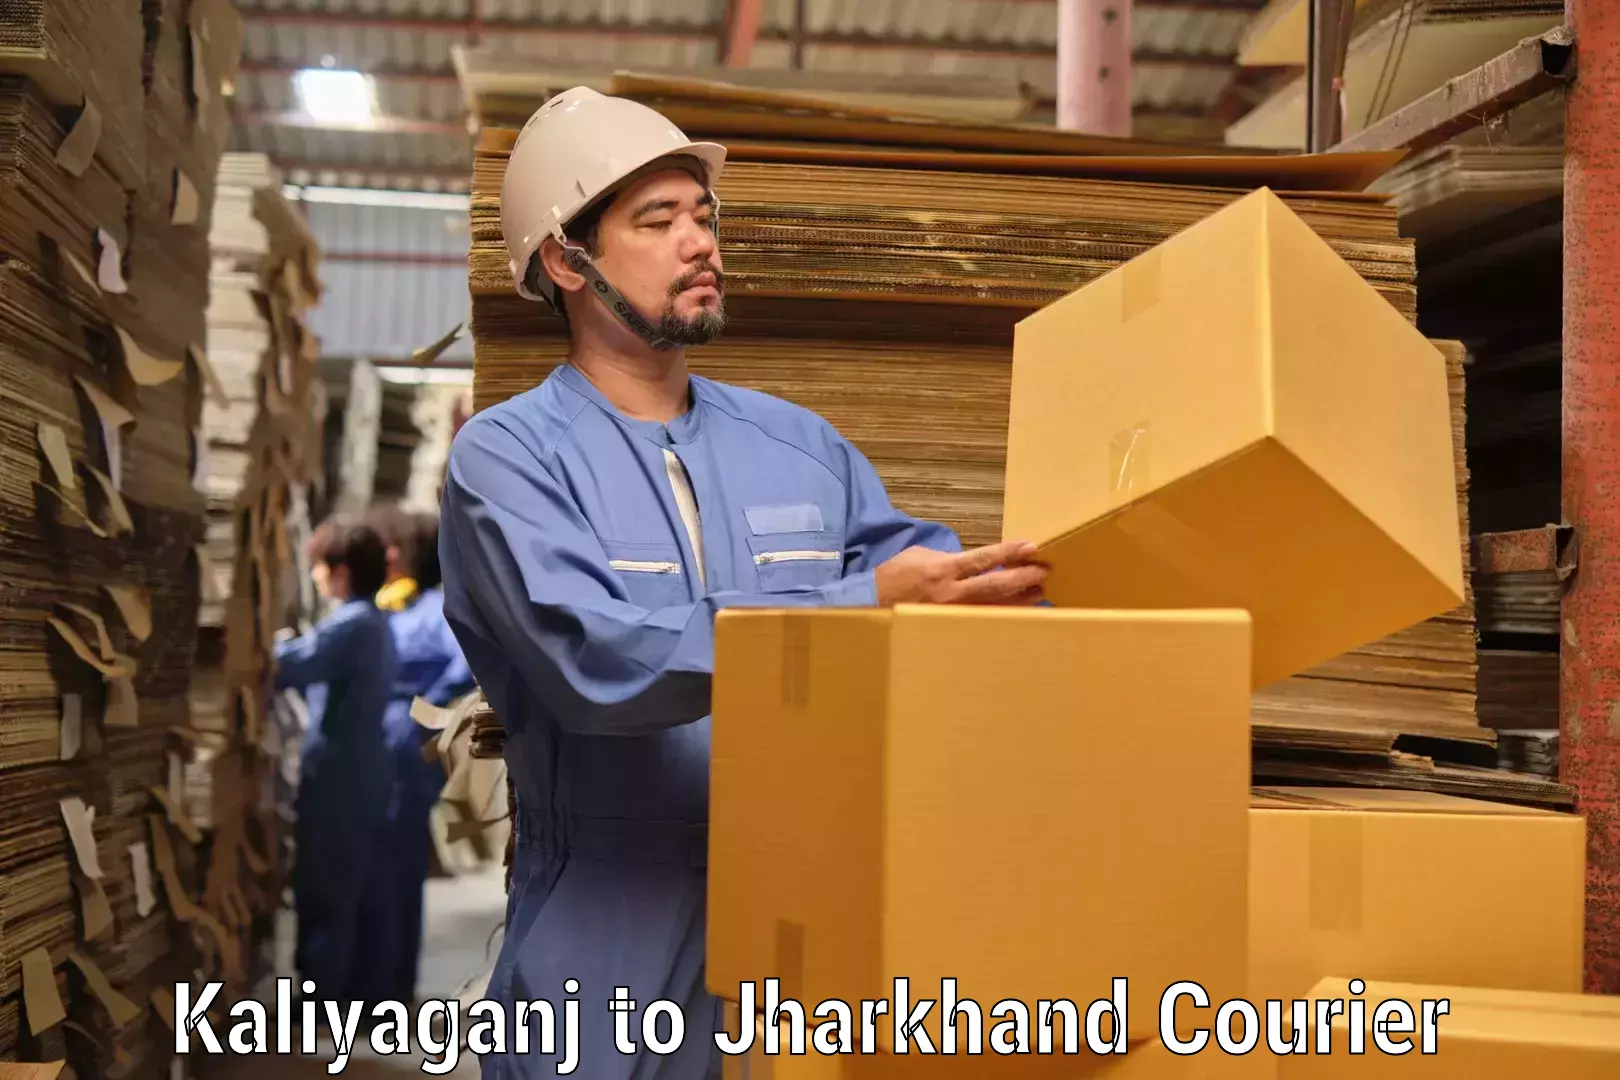 Premium courier solutions Kaliyaganj to Padma Hazaribagh